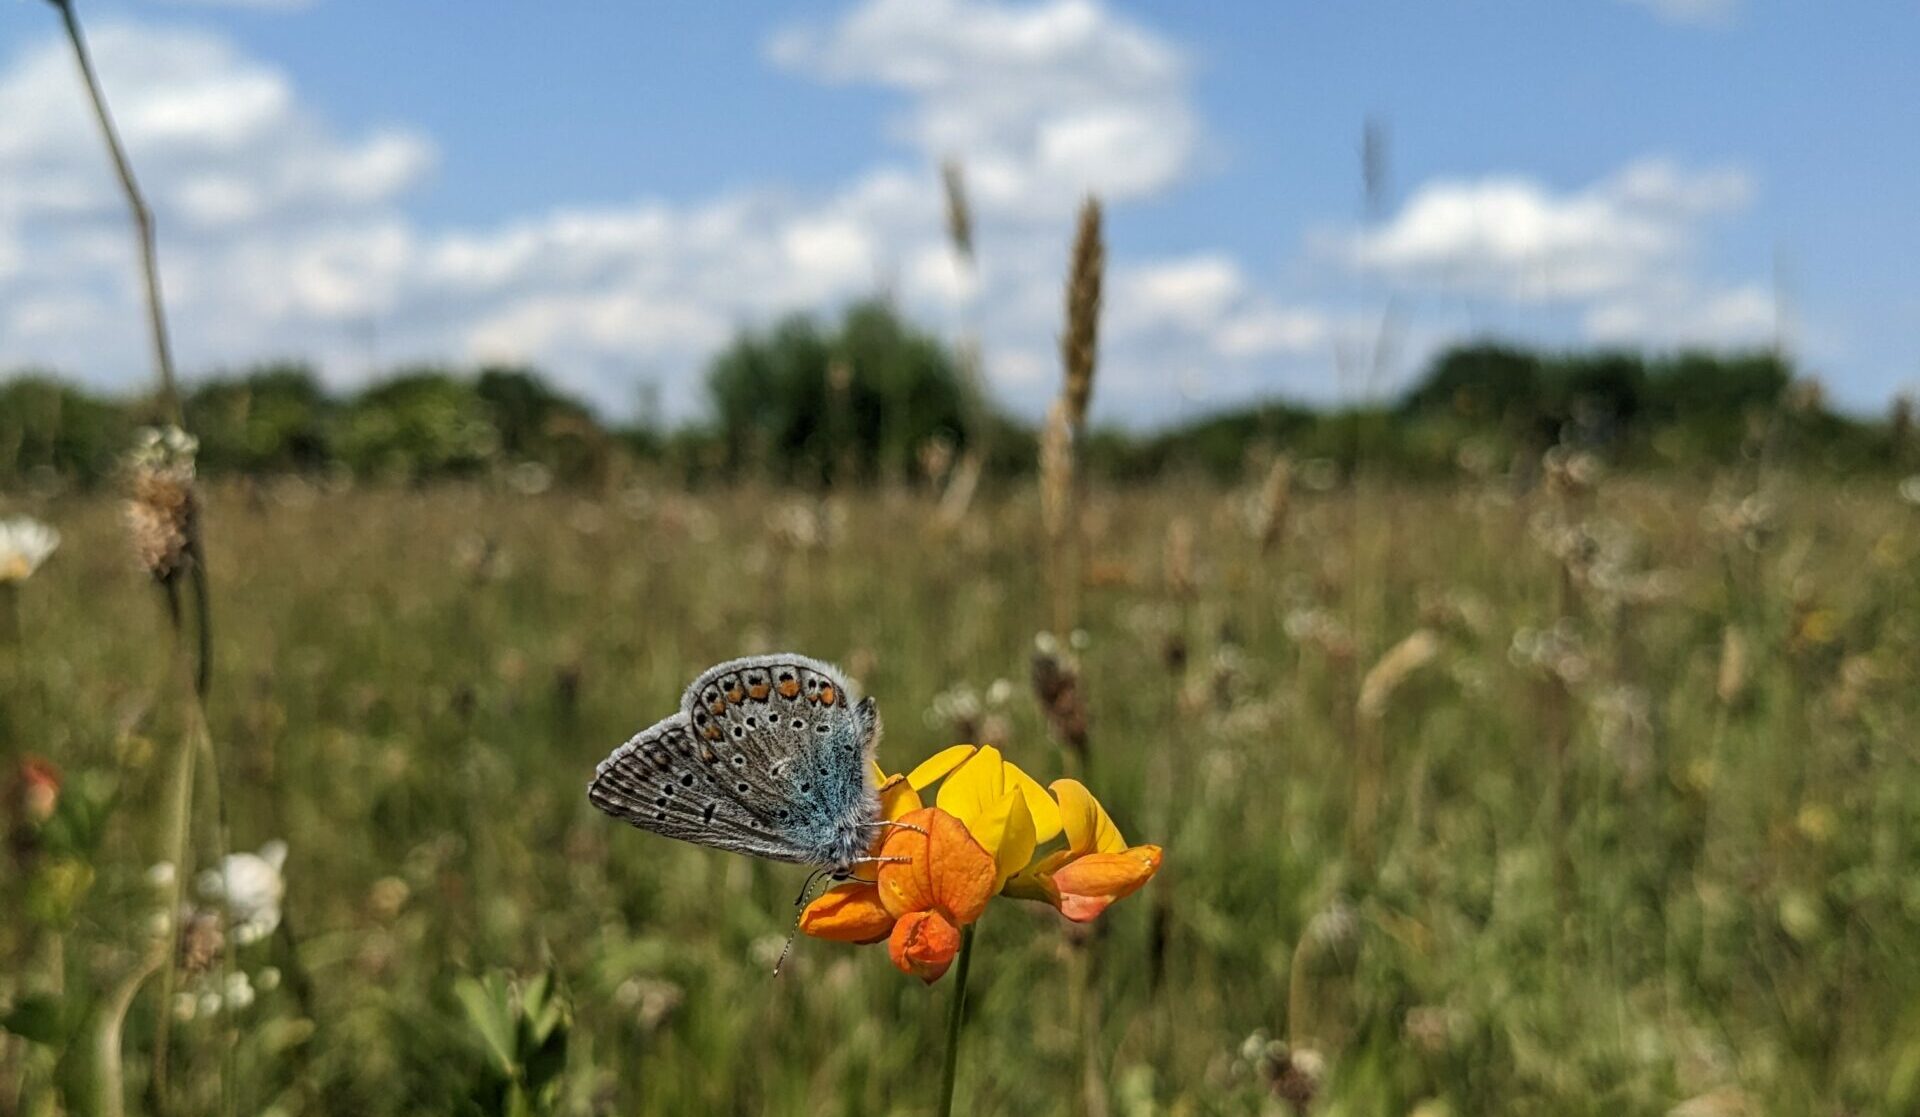 Weiß-blau schimmernder Schmetterling mit schwarzen und orangen Punkten sitzt auf gelber Blüte. Dahinter ist eine Wiese mit vielen verschiedenen Pflanzen sowie blauer Himmel mit ein paar weißen Wolken zu sehen